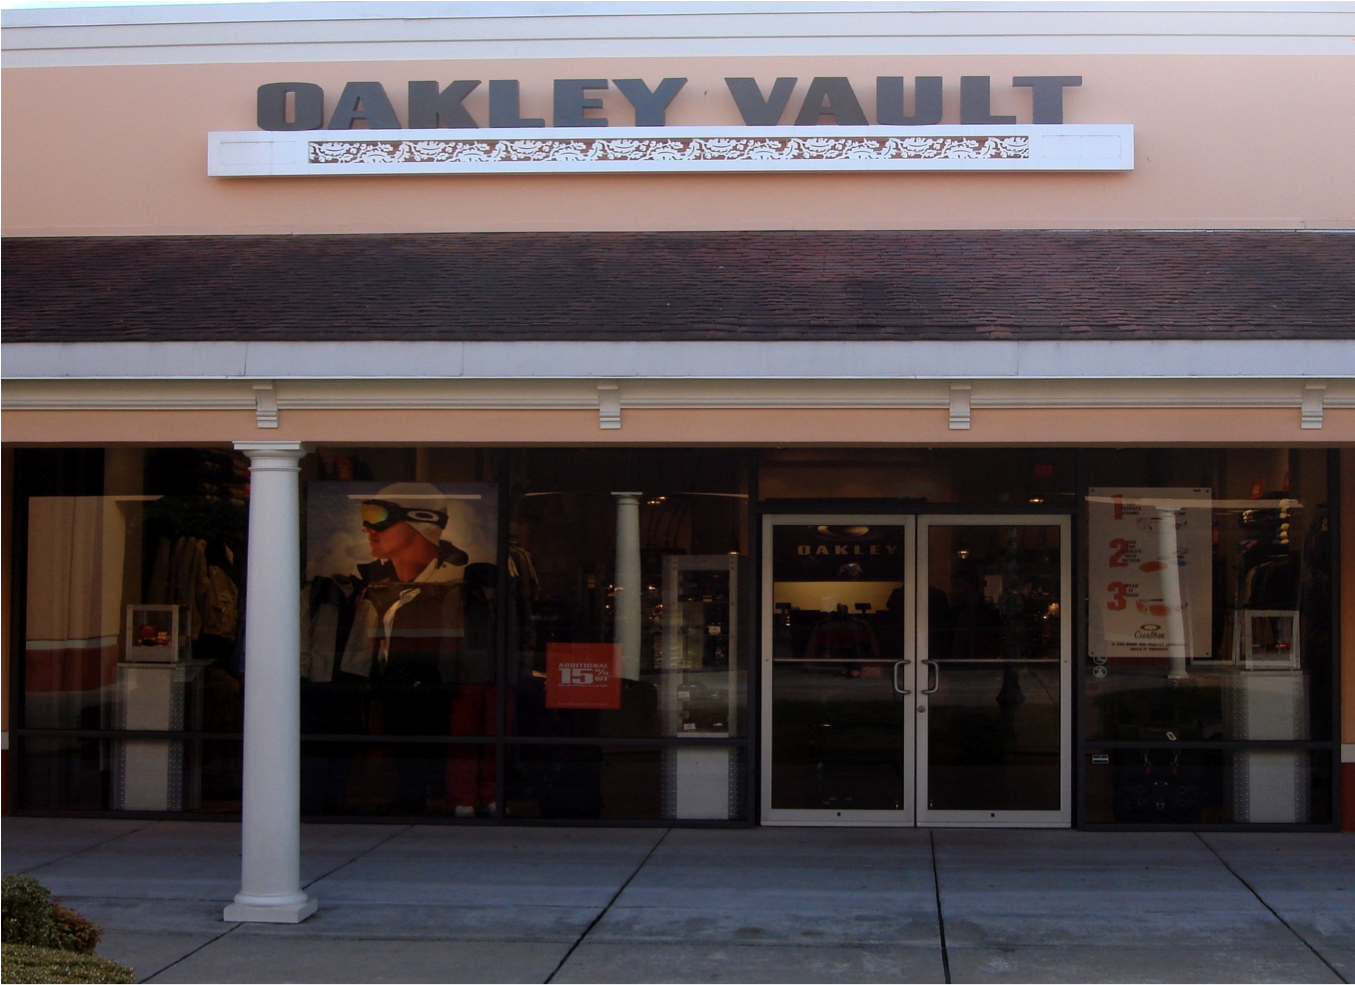 Oakley Vault